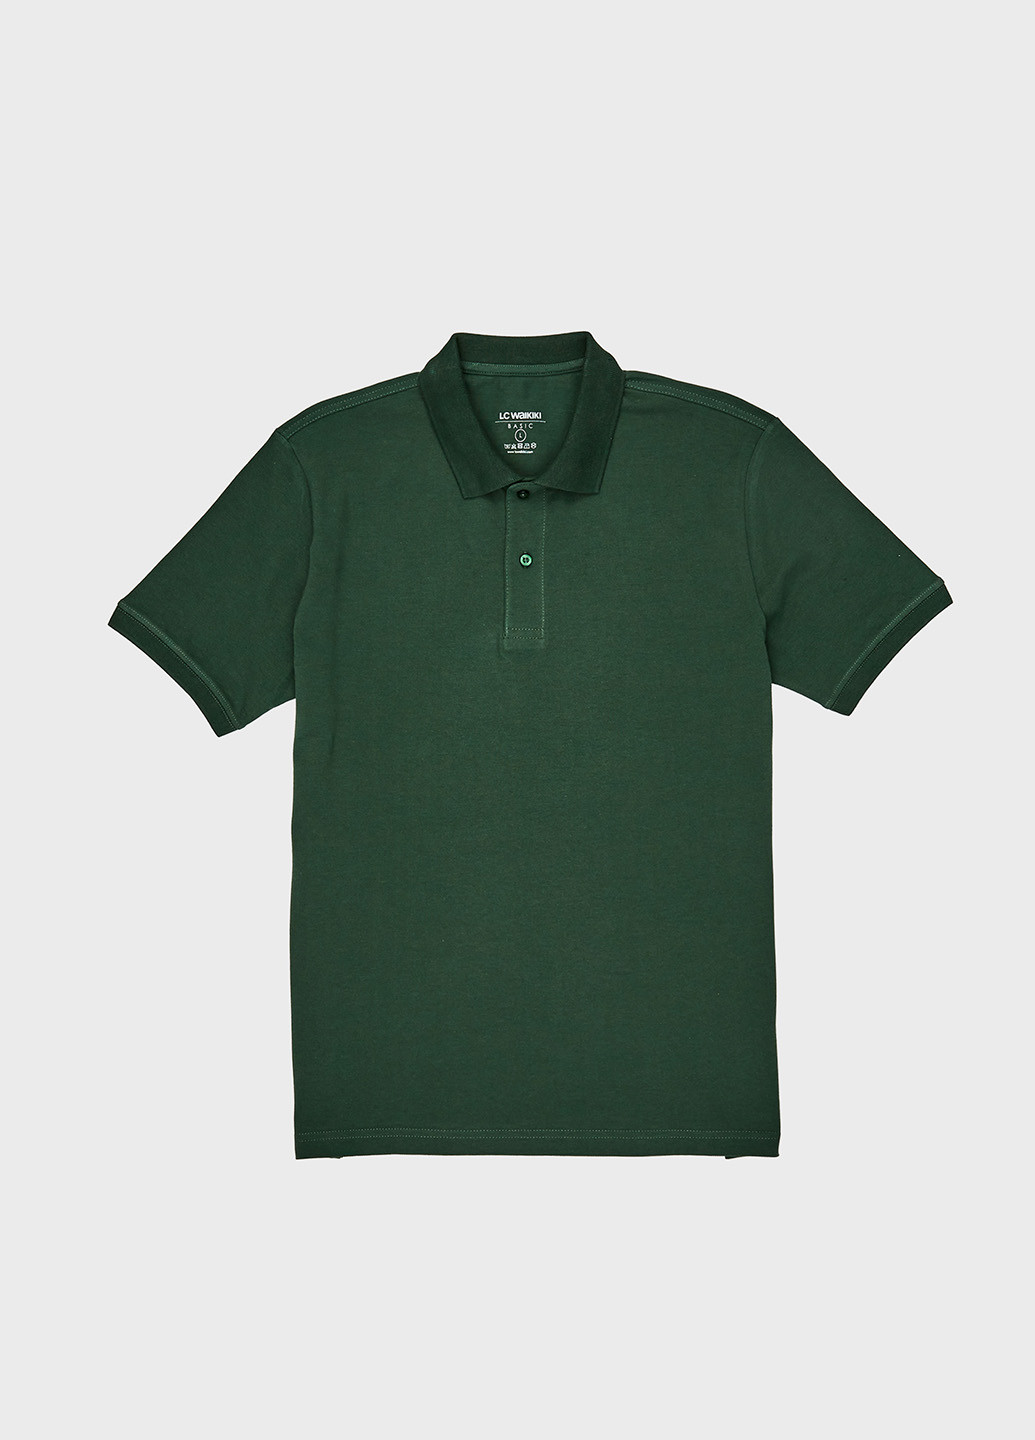 Зеленая футболка-поло для мужчин LC Waikiki однотонная